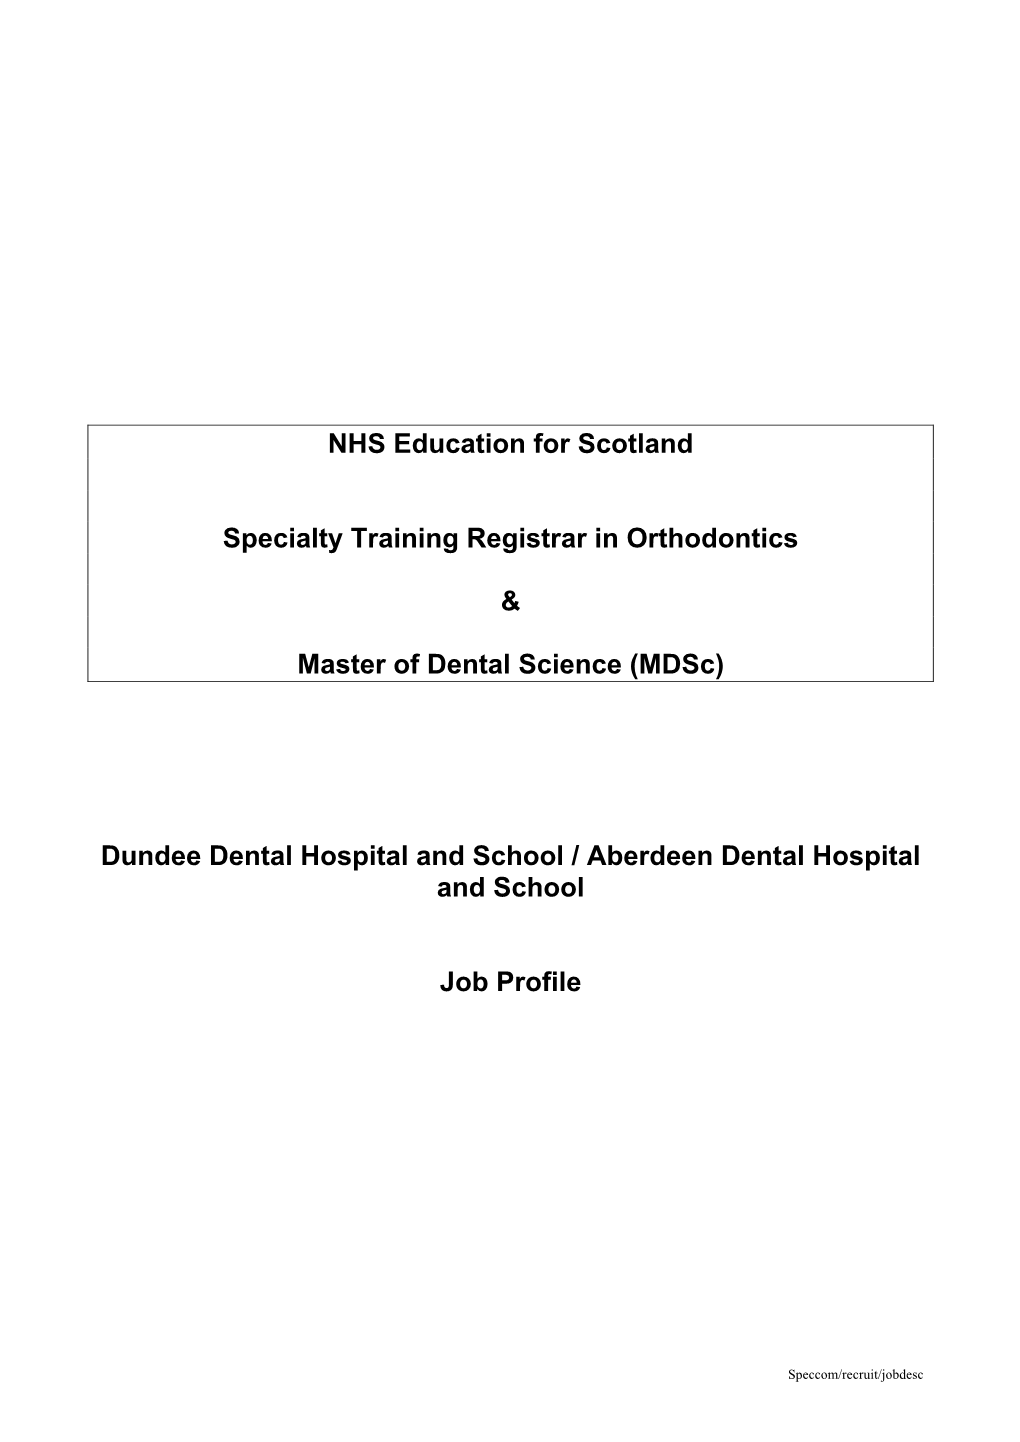 NHS Education for Scotland Specialty Training Registrar in Orthodontics & Master of Dental Science (Mdsc) Dundee Dental Hosp